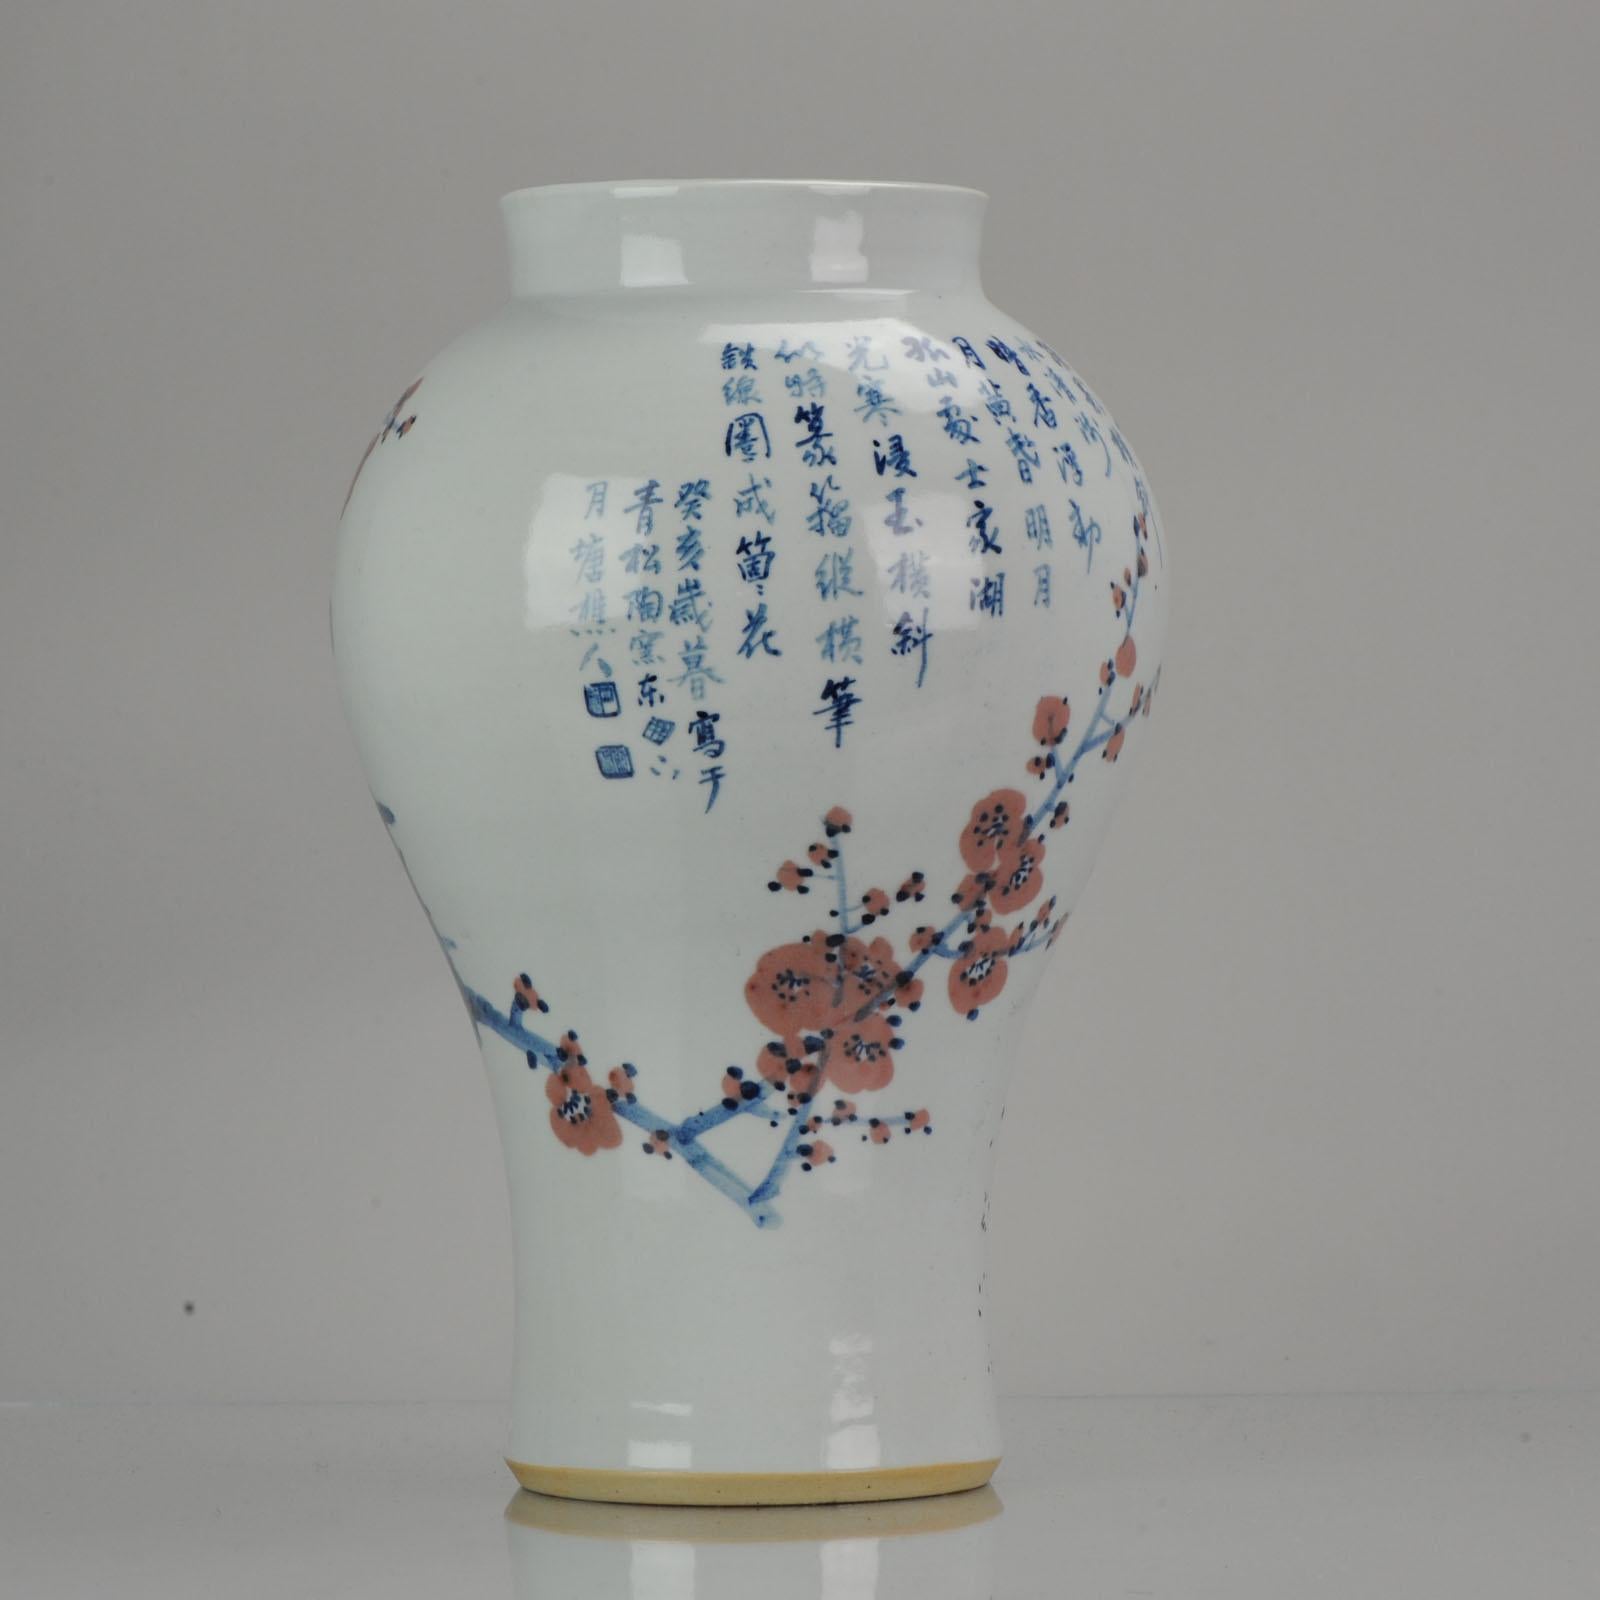 Un vase très joliment décoré d'une scène de fleurs et de fleurs de prunus et de calligraphie.

Condition
Condition générale parfaite. Taille 325mm.

Période
pRoC du 20ème siècle (1949-maintenant).
  